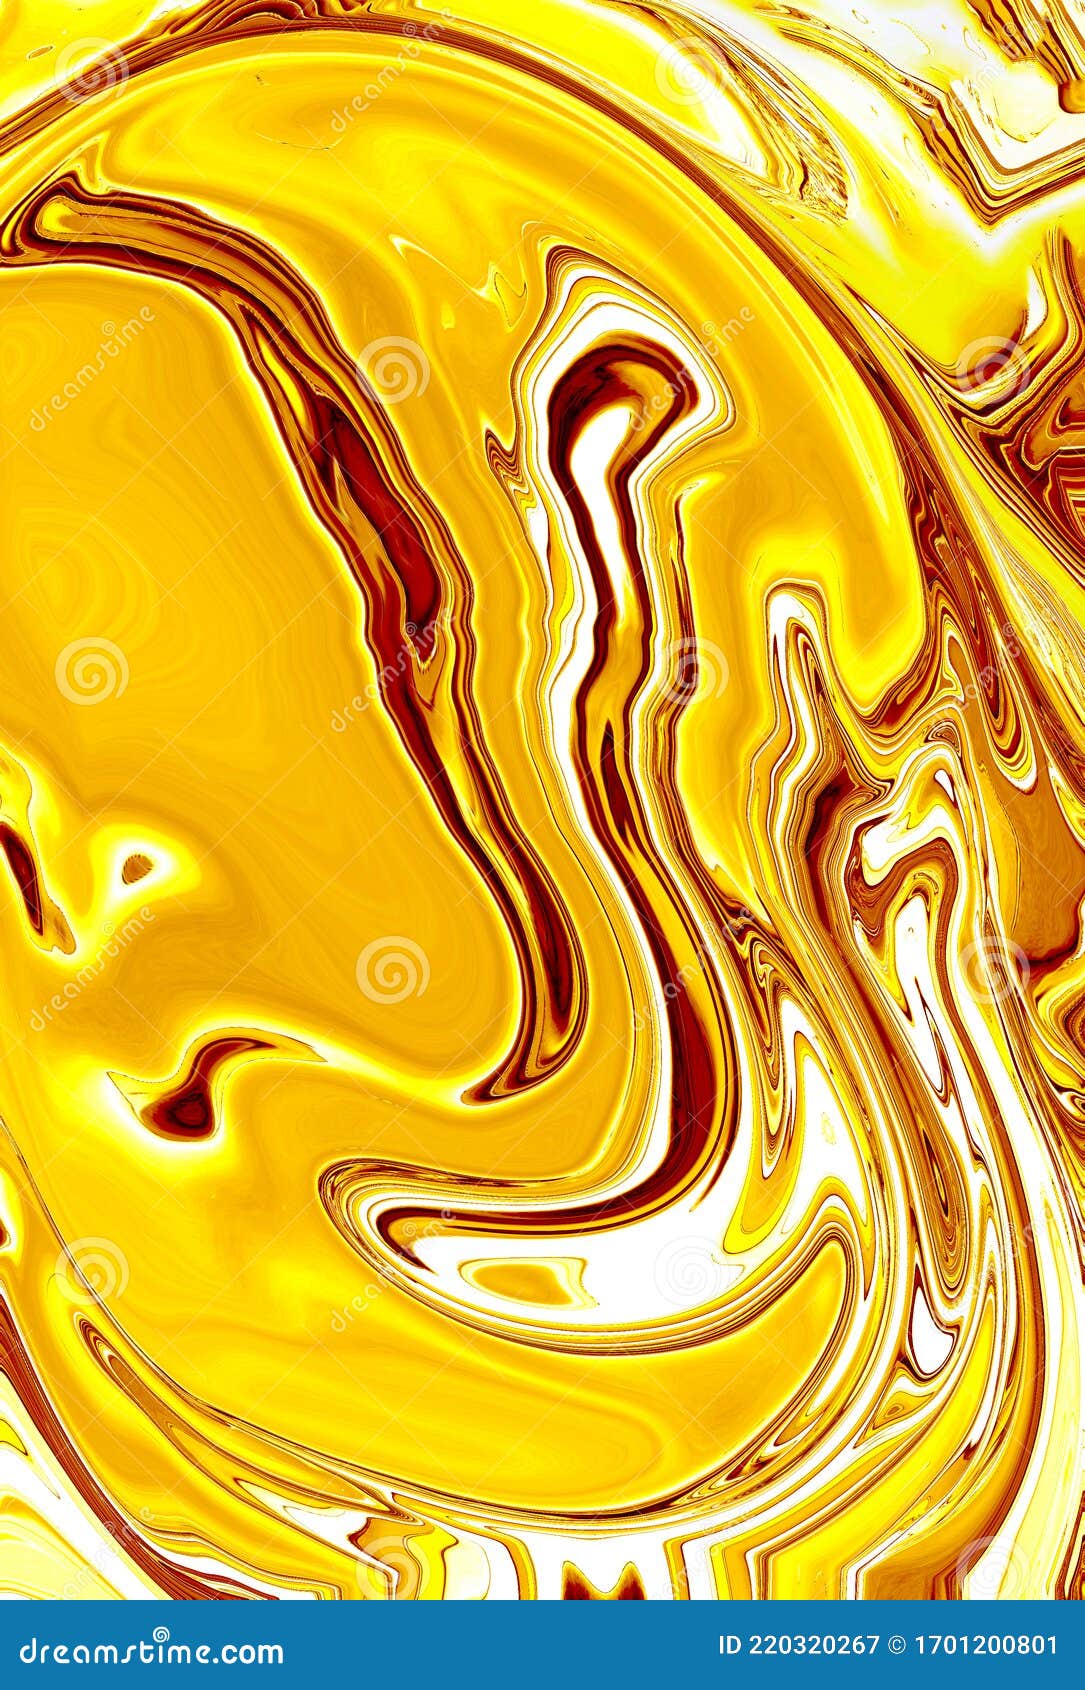 Một hình nền vàng ngọc trai trên nền trắng rực rỡ! Với mẫu này, bạn sẽ trang trí màn hình của mình với sự sang trọng và hiện đại. Hãy ngắm sự hoàn hảo của hình lưu ly và màu vàng sáng tạo nên sự phóng khoáng, tươi sáng, và đặc biệt cho không gian làm việc của bạn.